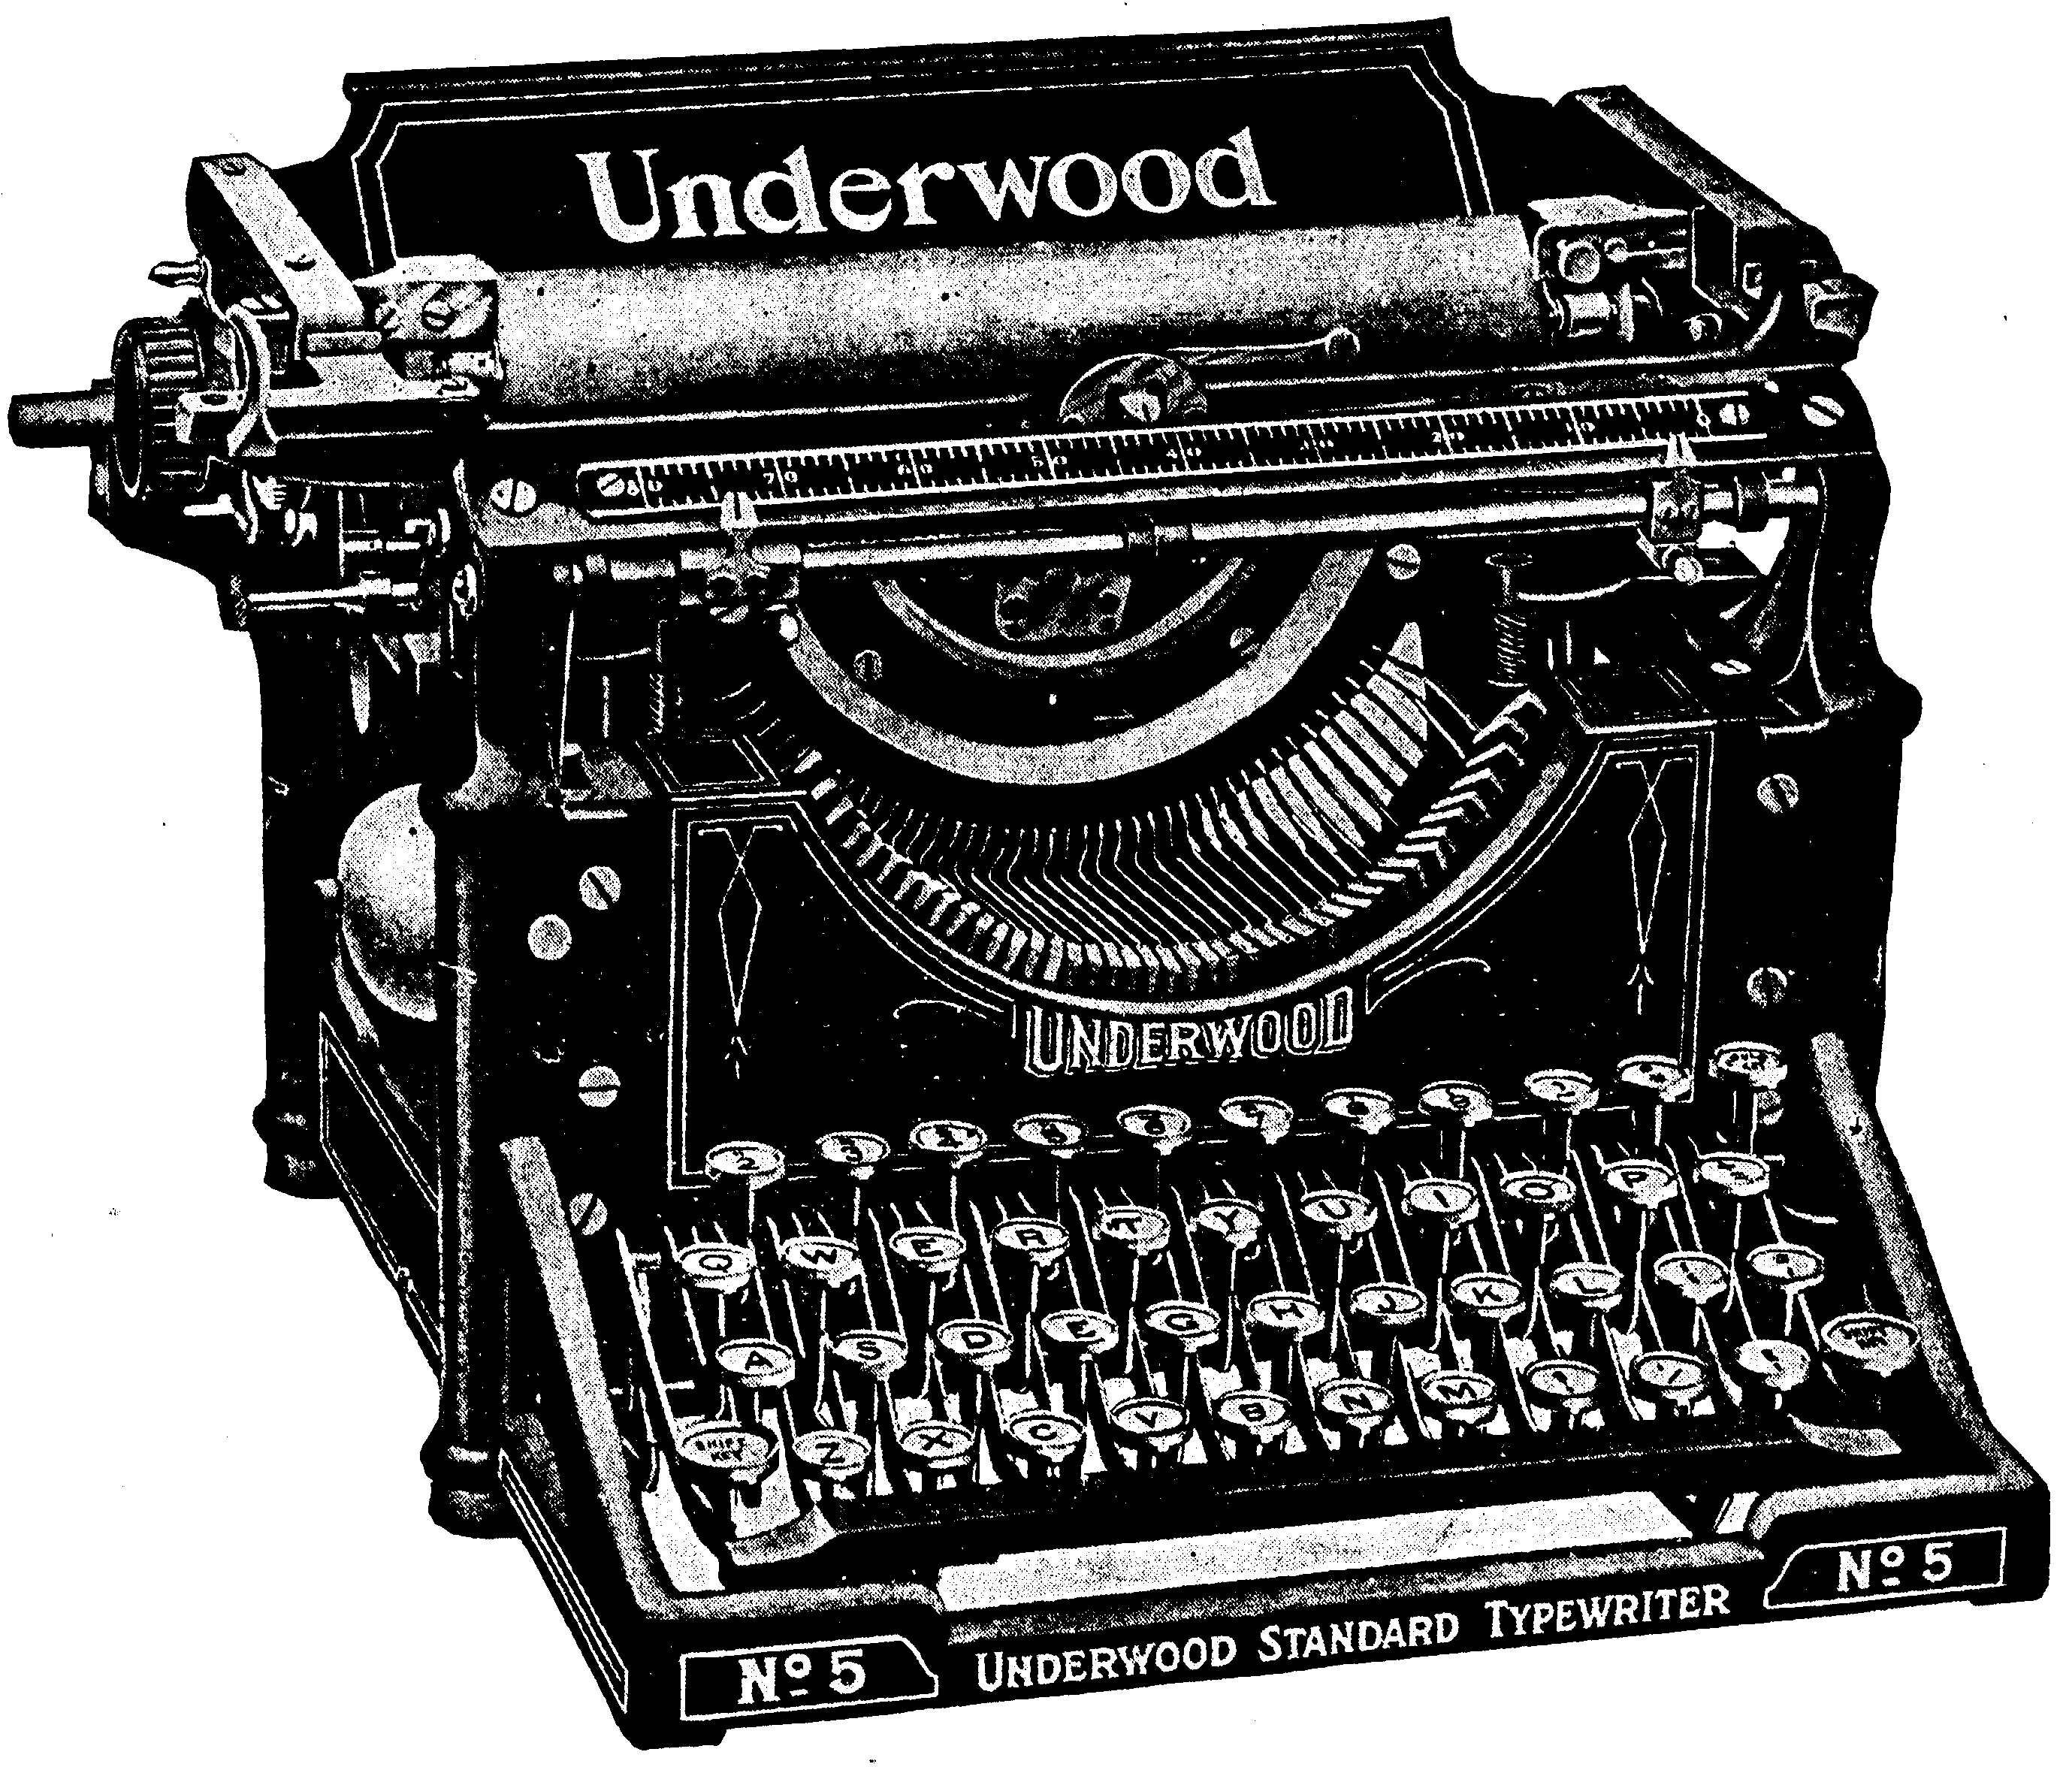 Underwood Standard Typewriter No.5